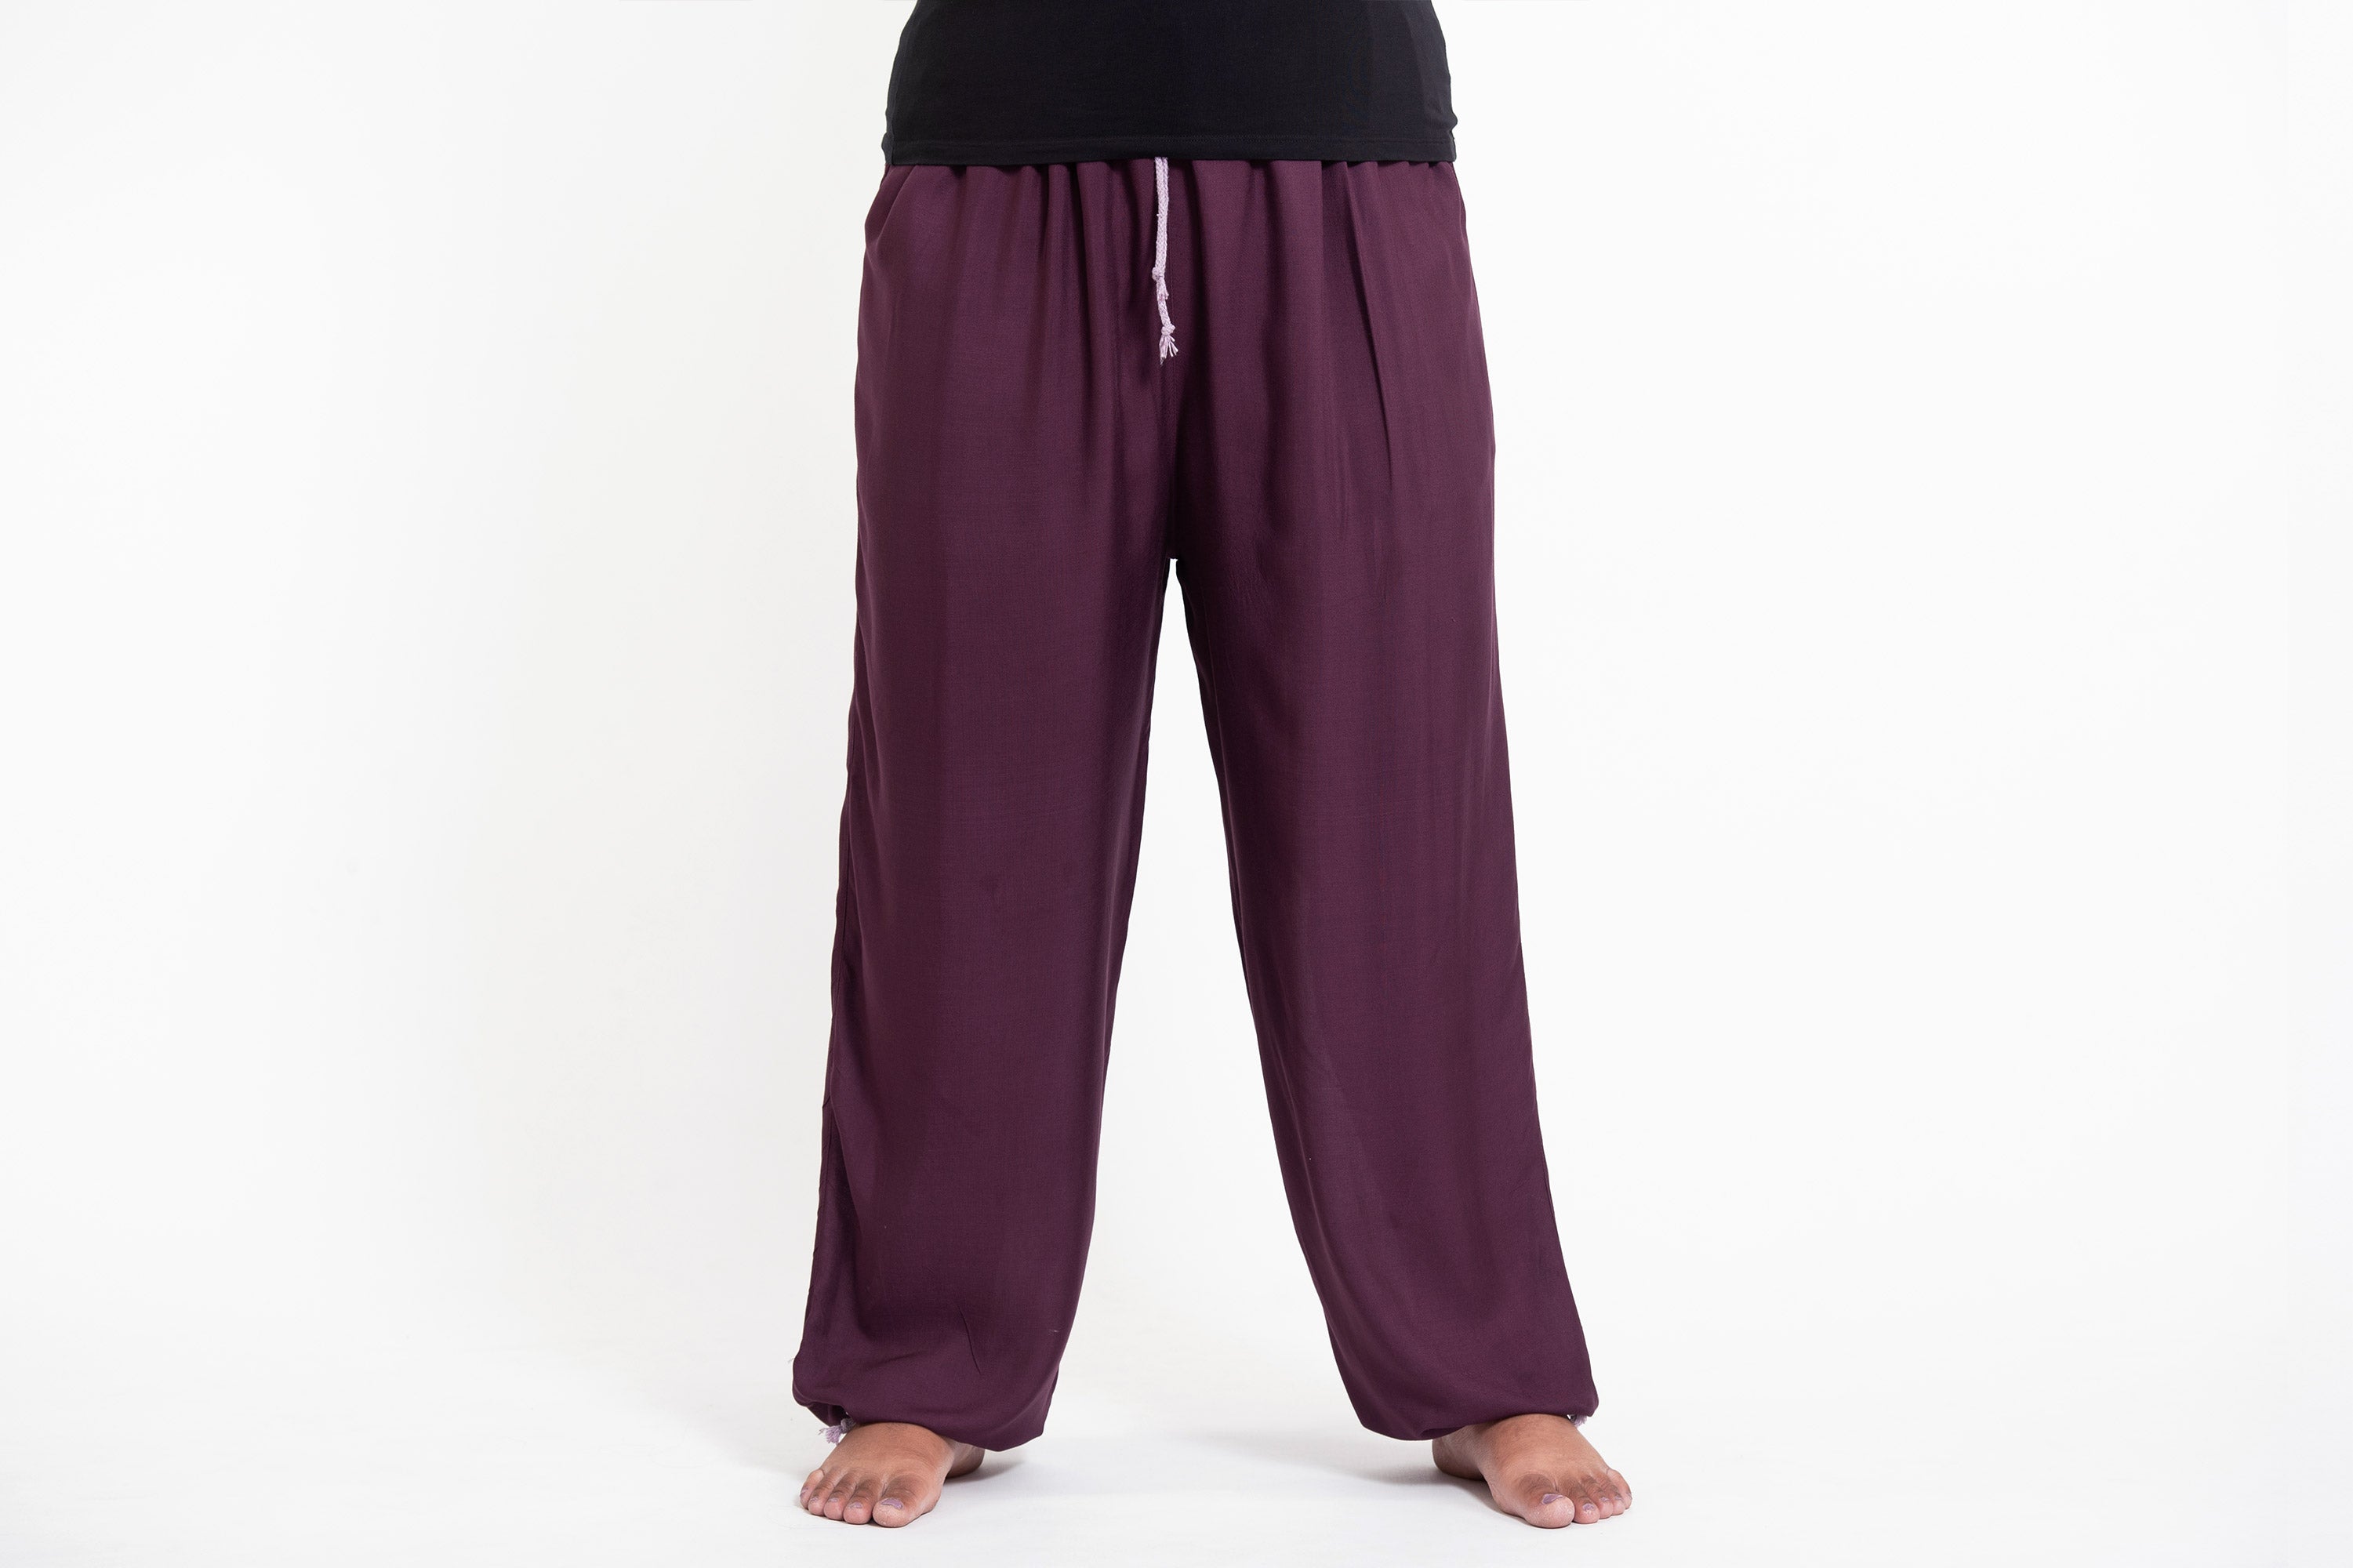 JDEFEG Soft Yoga Pants for Women Cotton Women Custom Soild